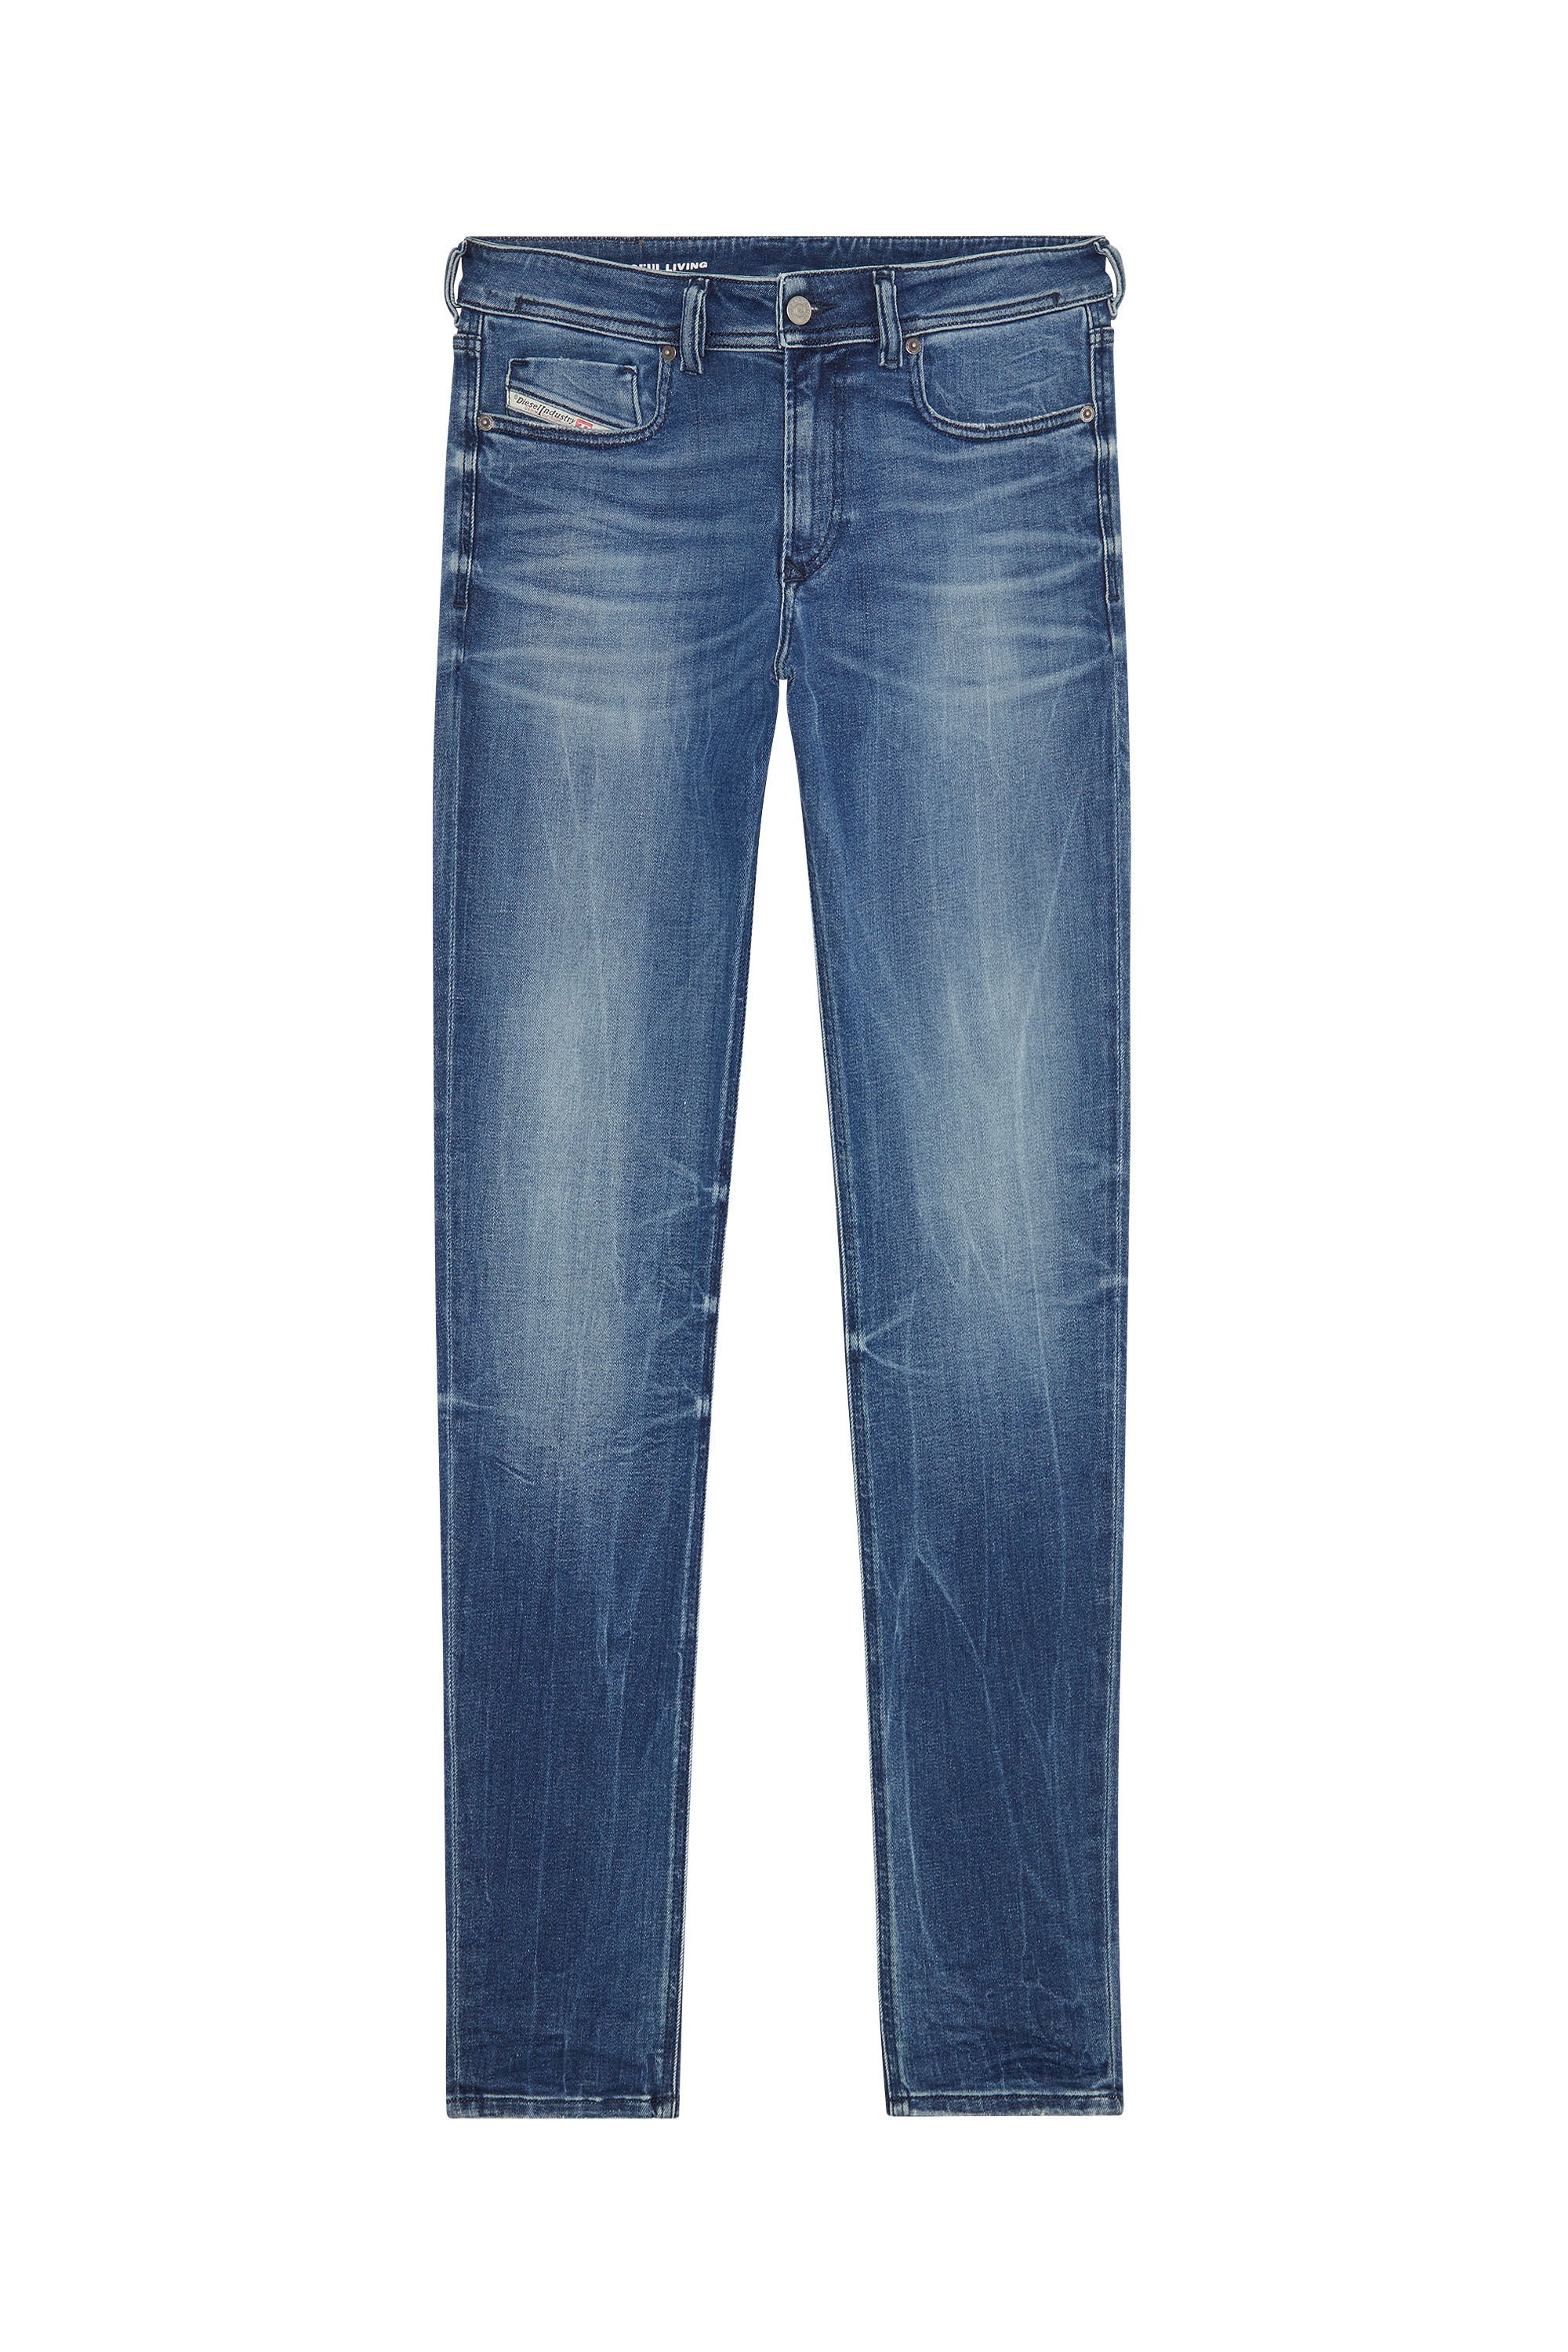 Diesel - Skinny Jeans 1979 Sleenker 09G30, Medium blue - Image 2